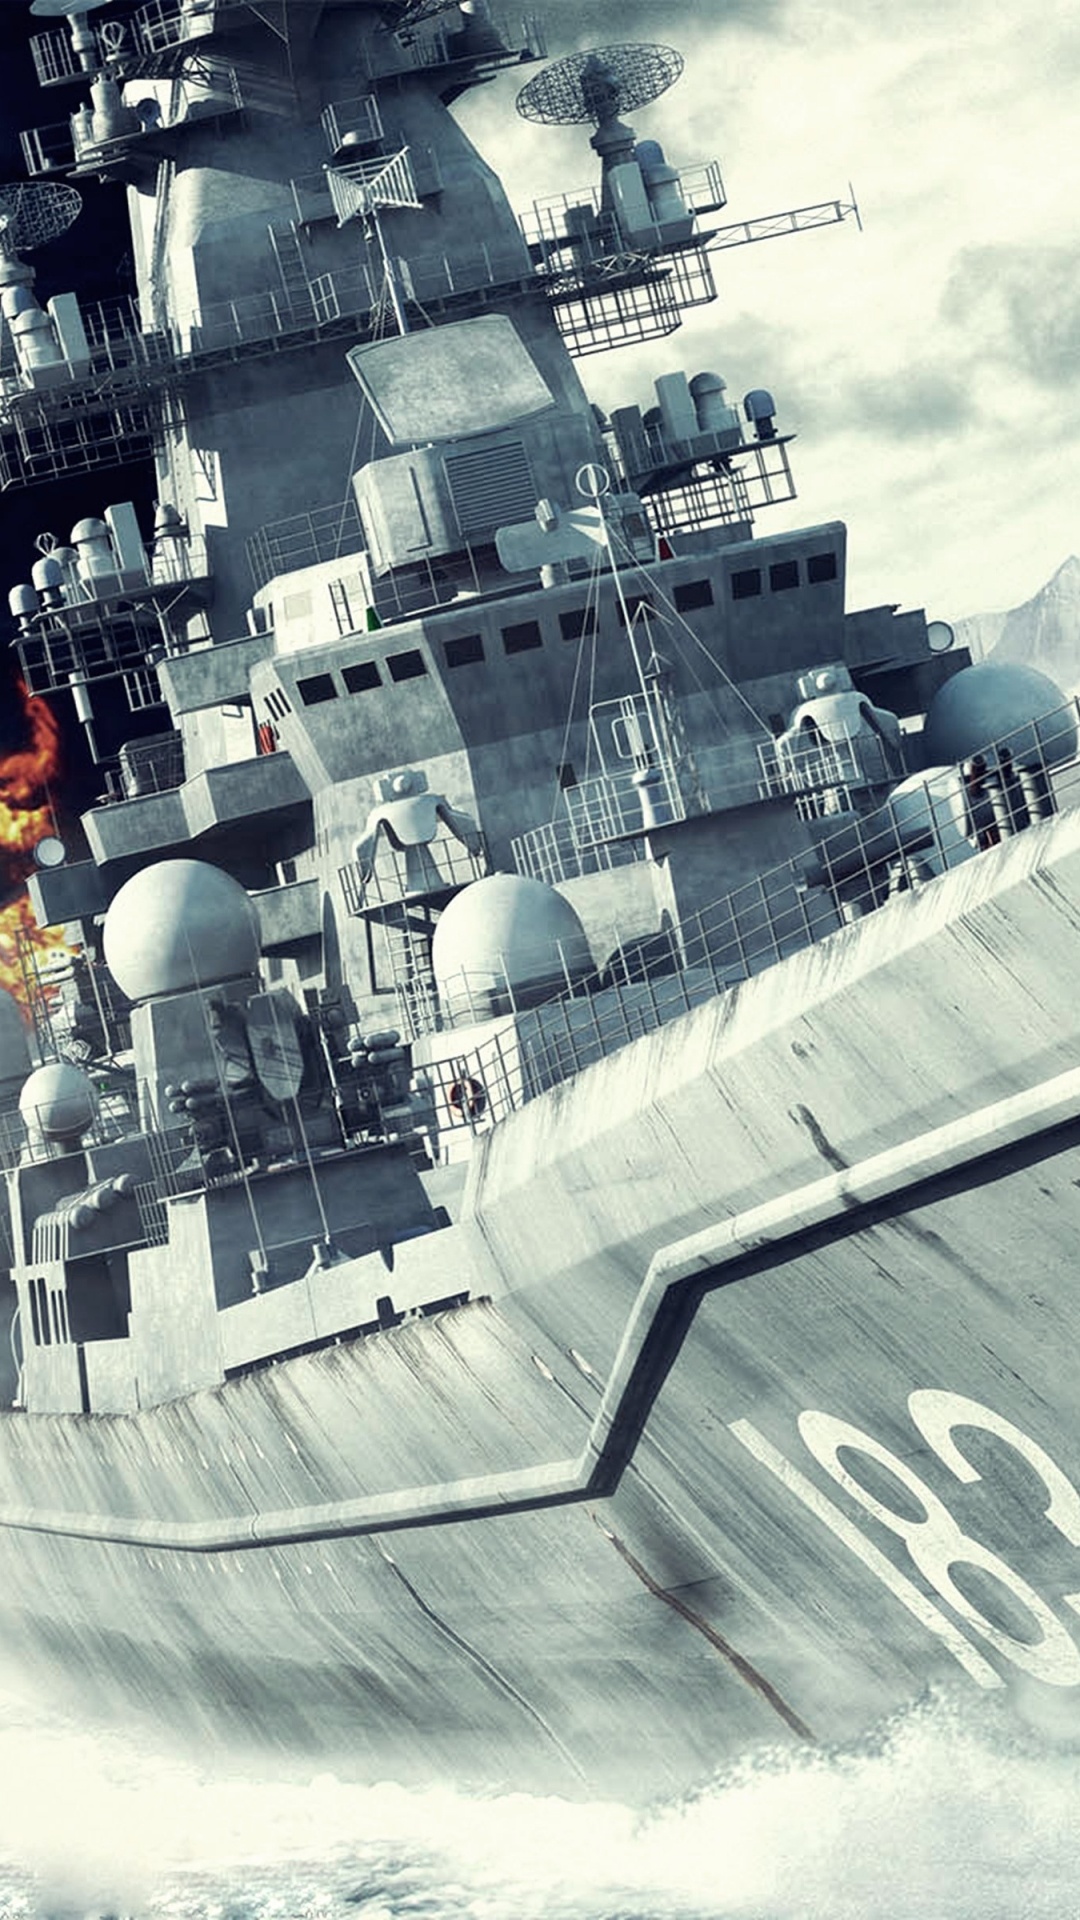 Acorazado, Naval, Buque de Guerra de La, Crucero de Batalla, Destructora. Wallpaper in 1080x1920 Resolution